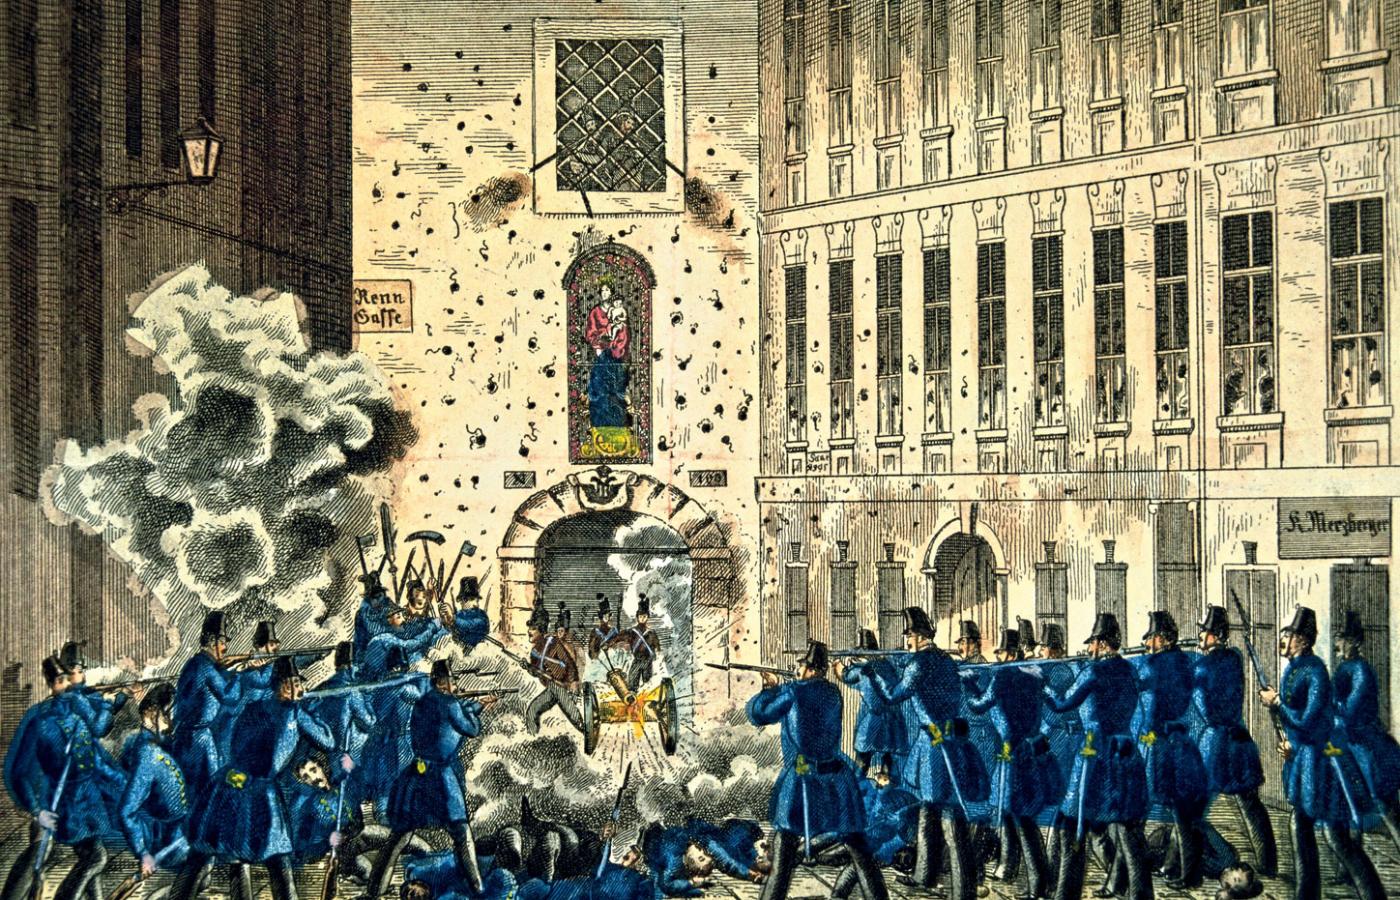 Szturm na zbrojownię w Wiedniu, 7 października 1848 r., ilustracja z epoki